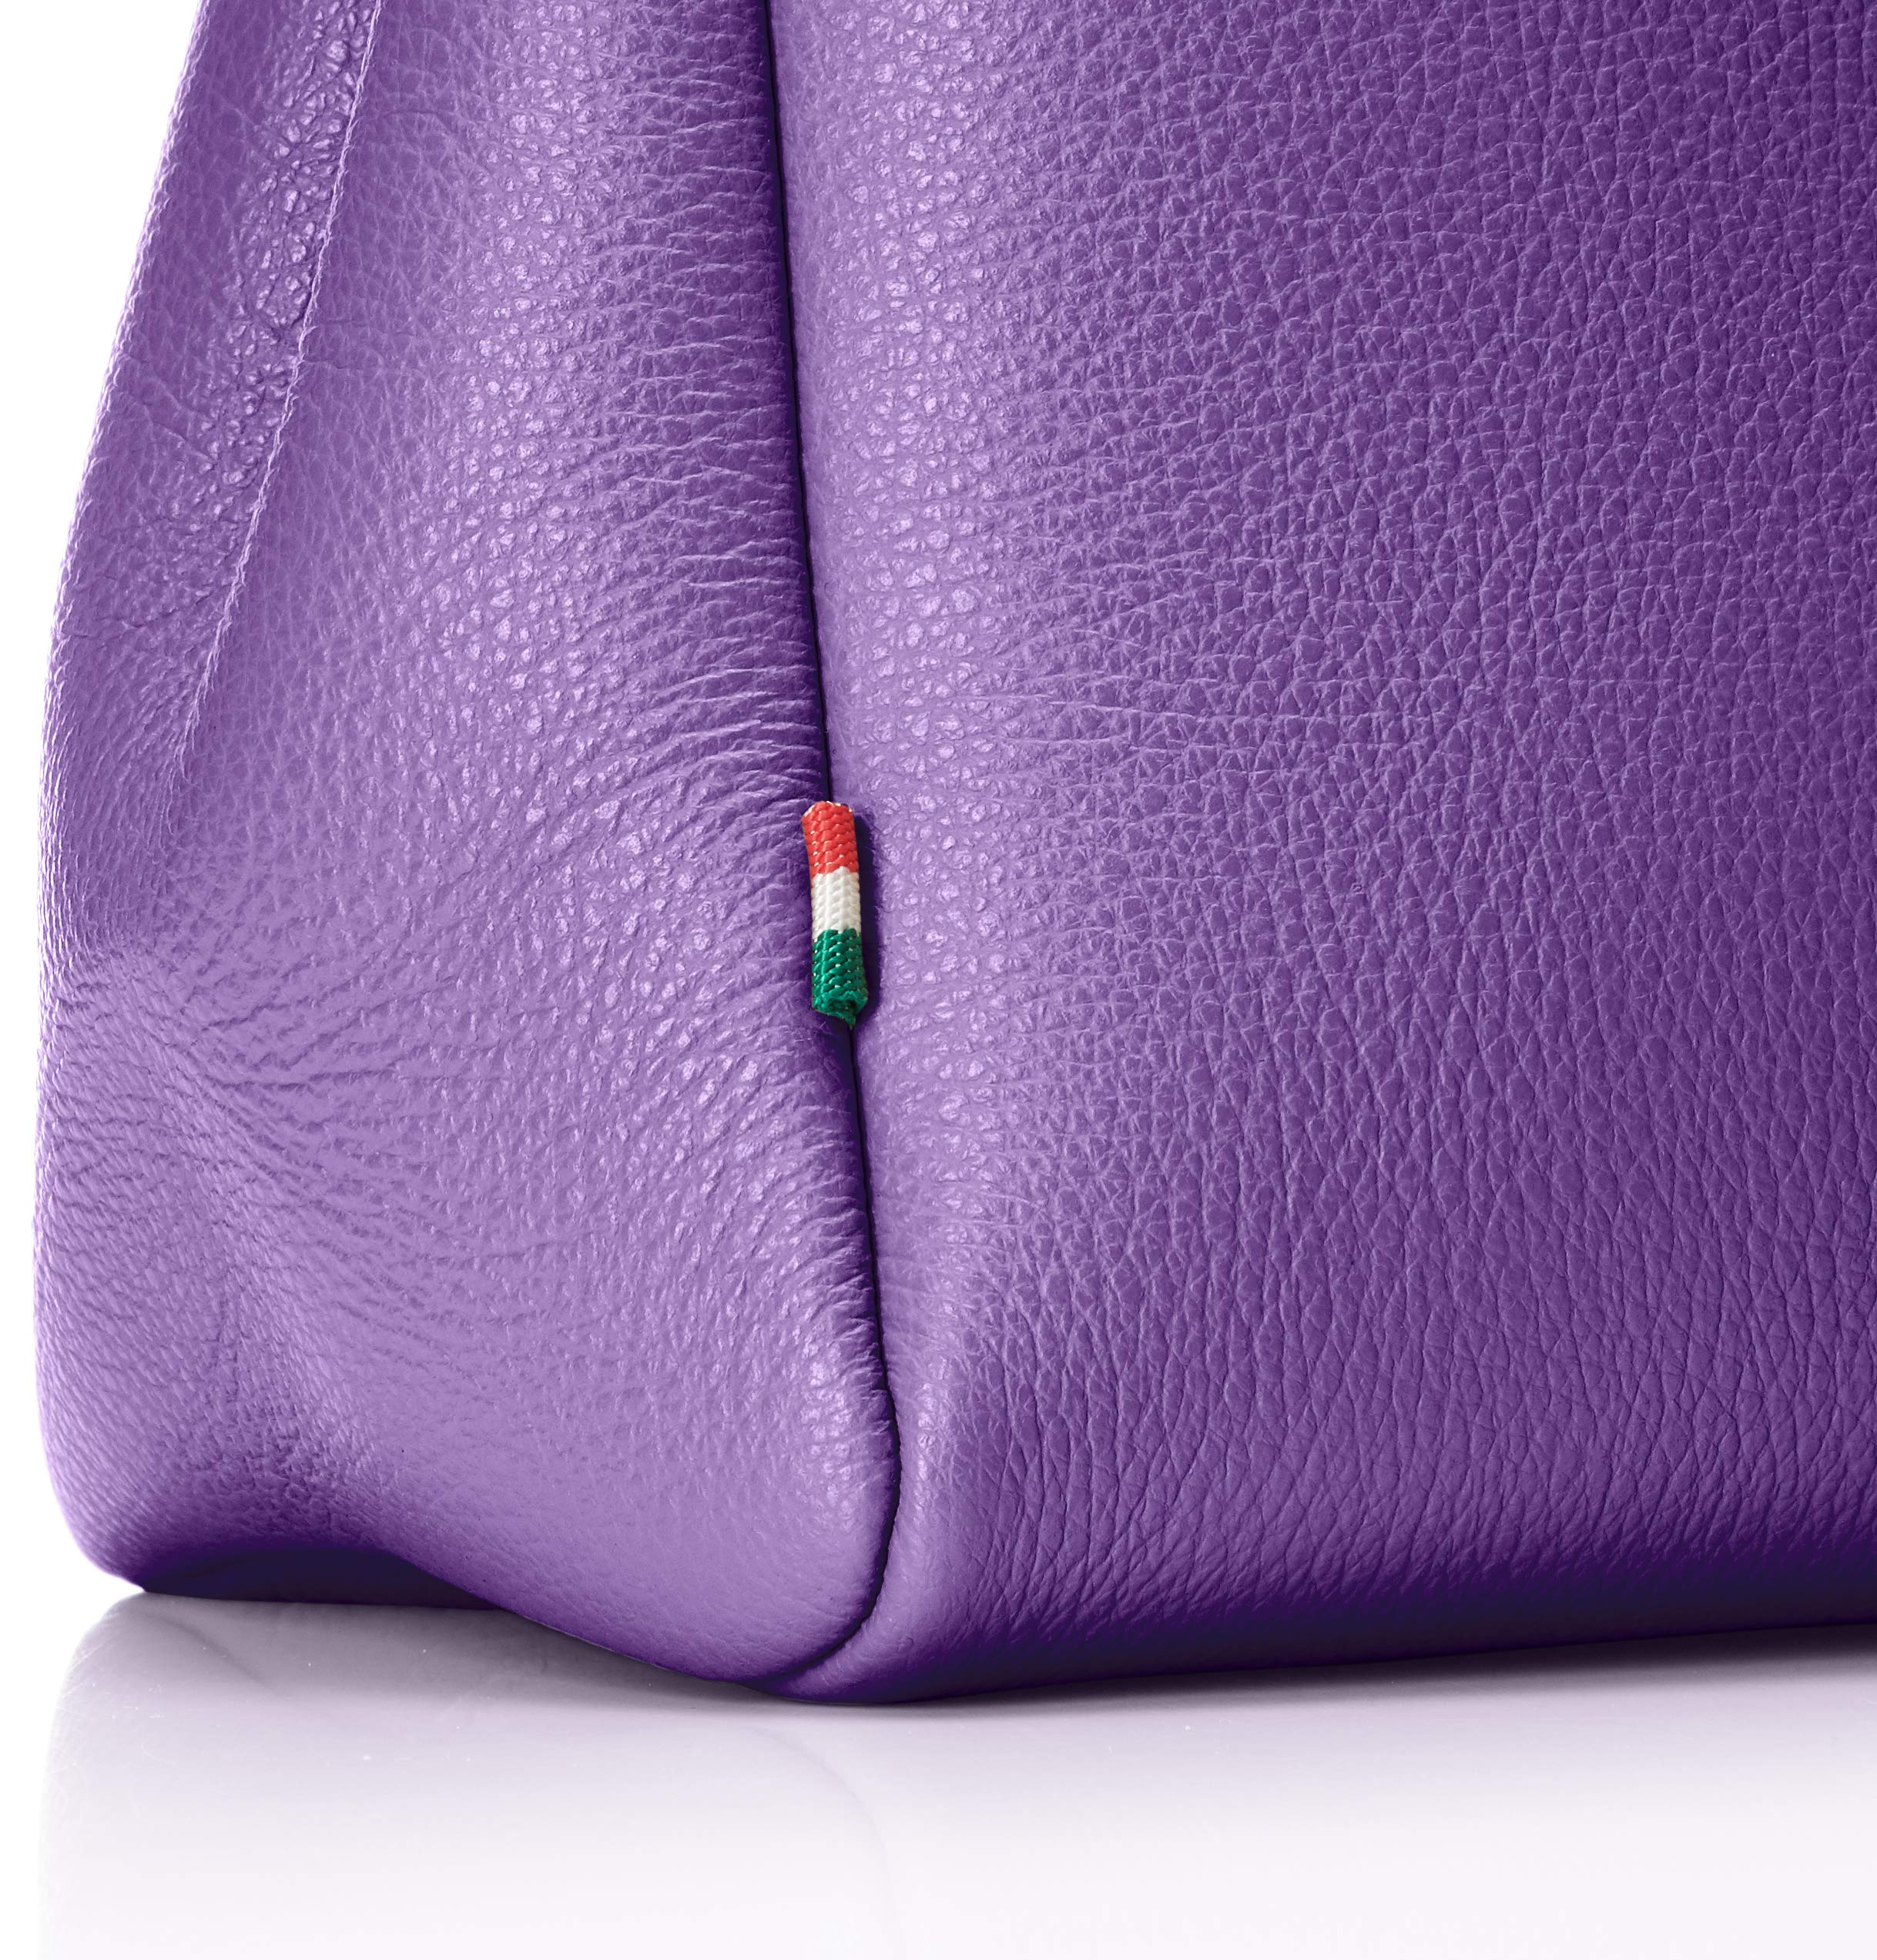 FABORSA(ファボルサ) VERONA1 ヴェローナ ハンドバッグ L<イタリア製>, Purple Berry